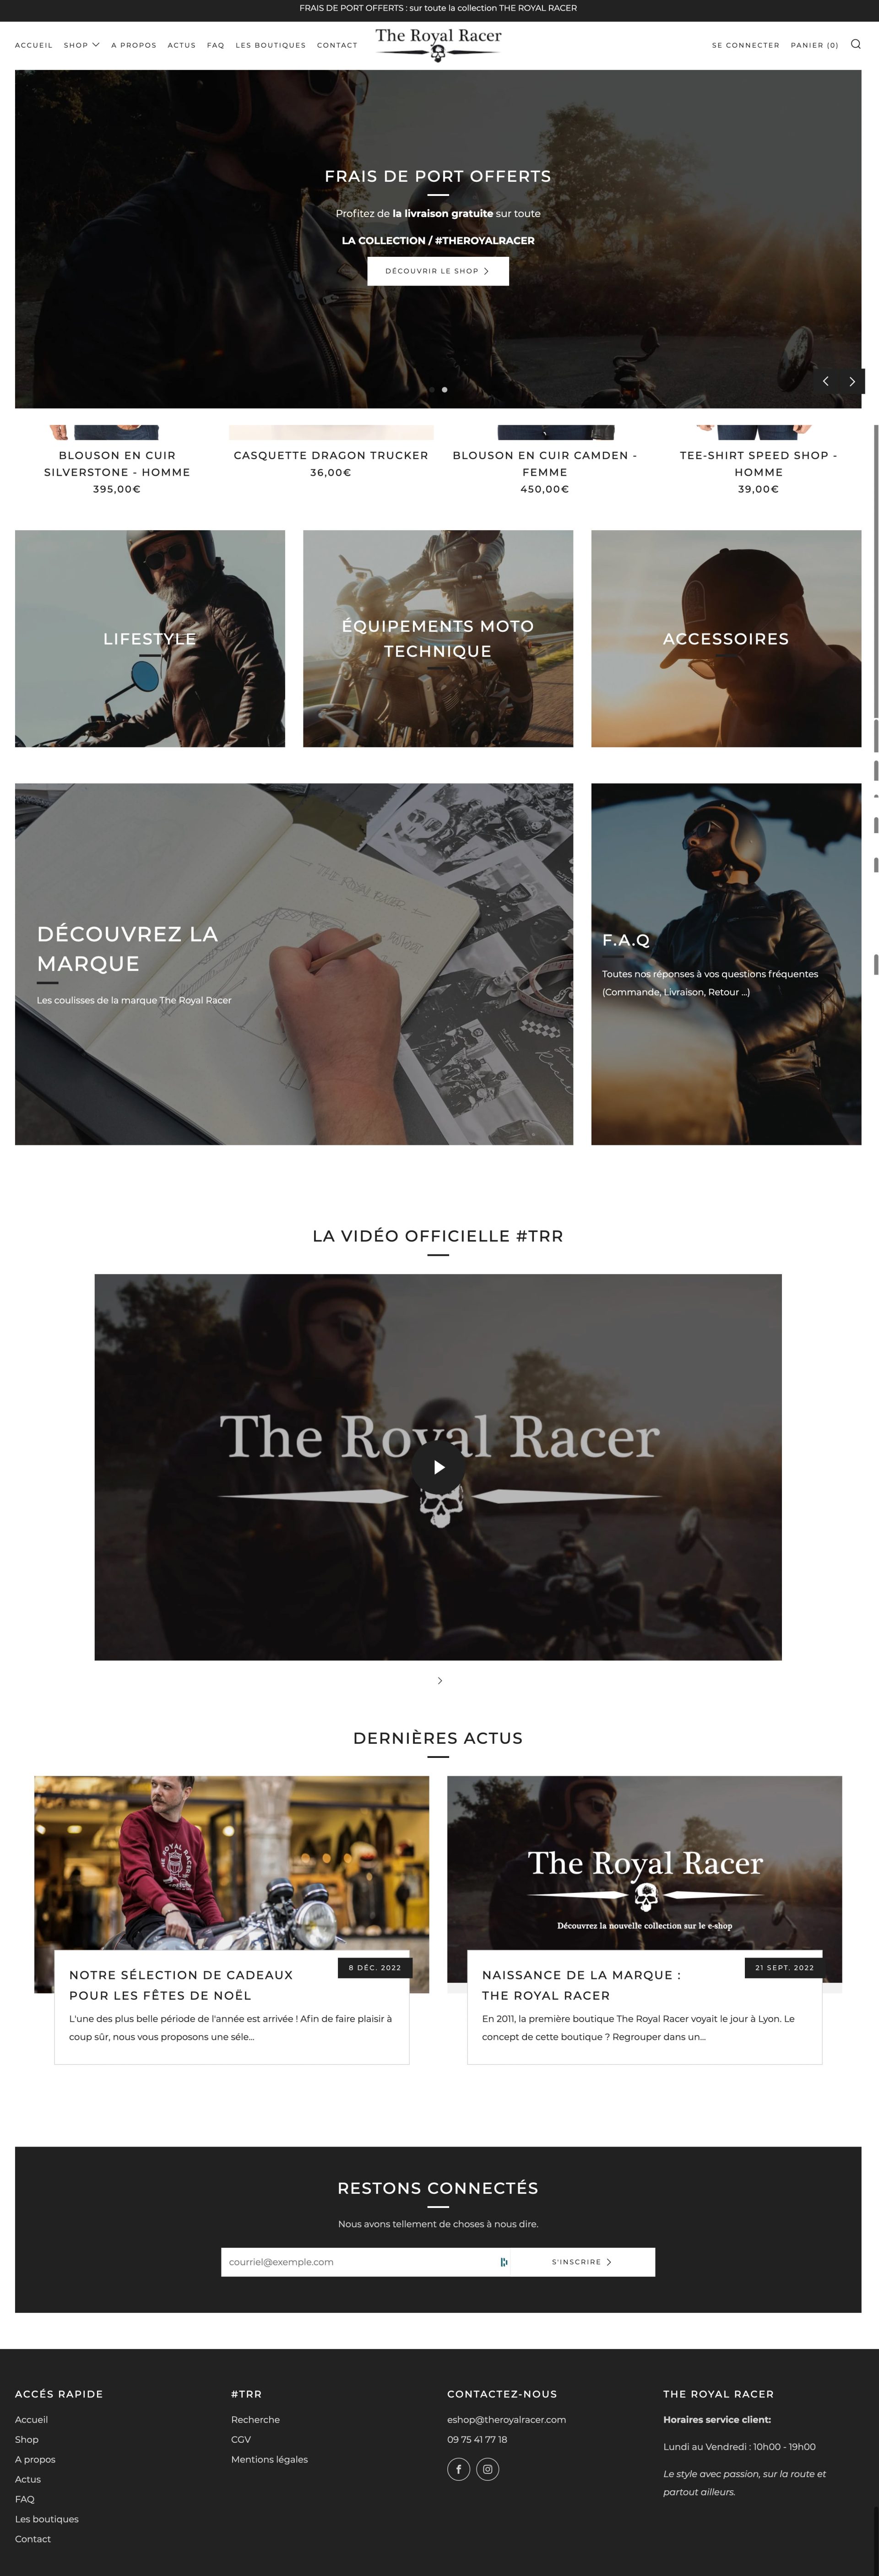 eshop the royal racer gamme exclusive vêtements et accessoires moto – the royal racer eshop 202301@2x.min